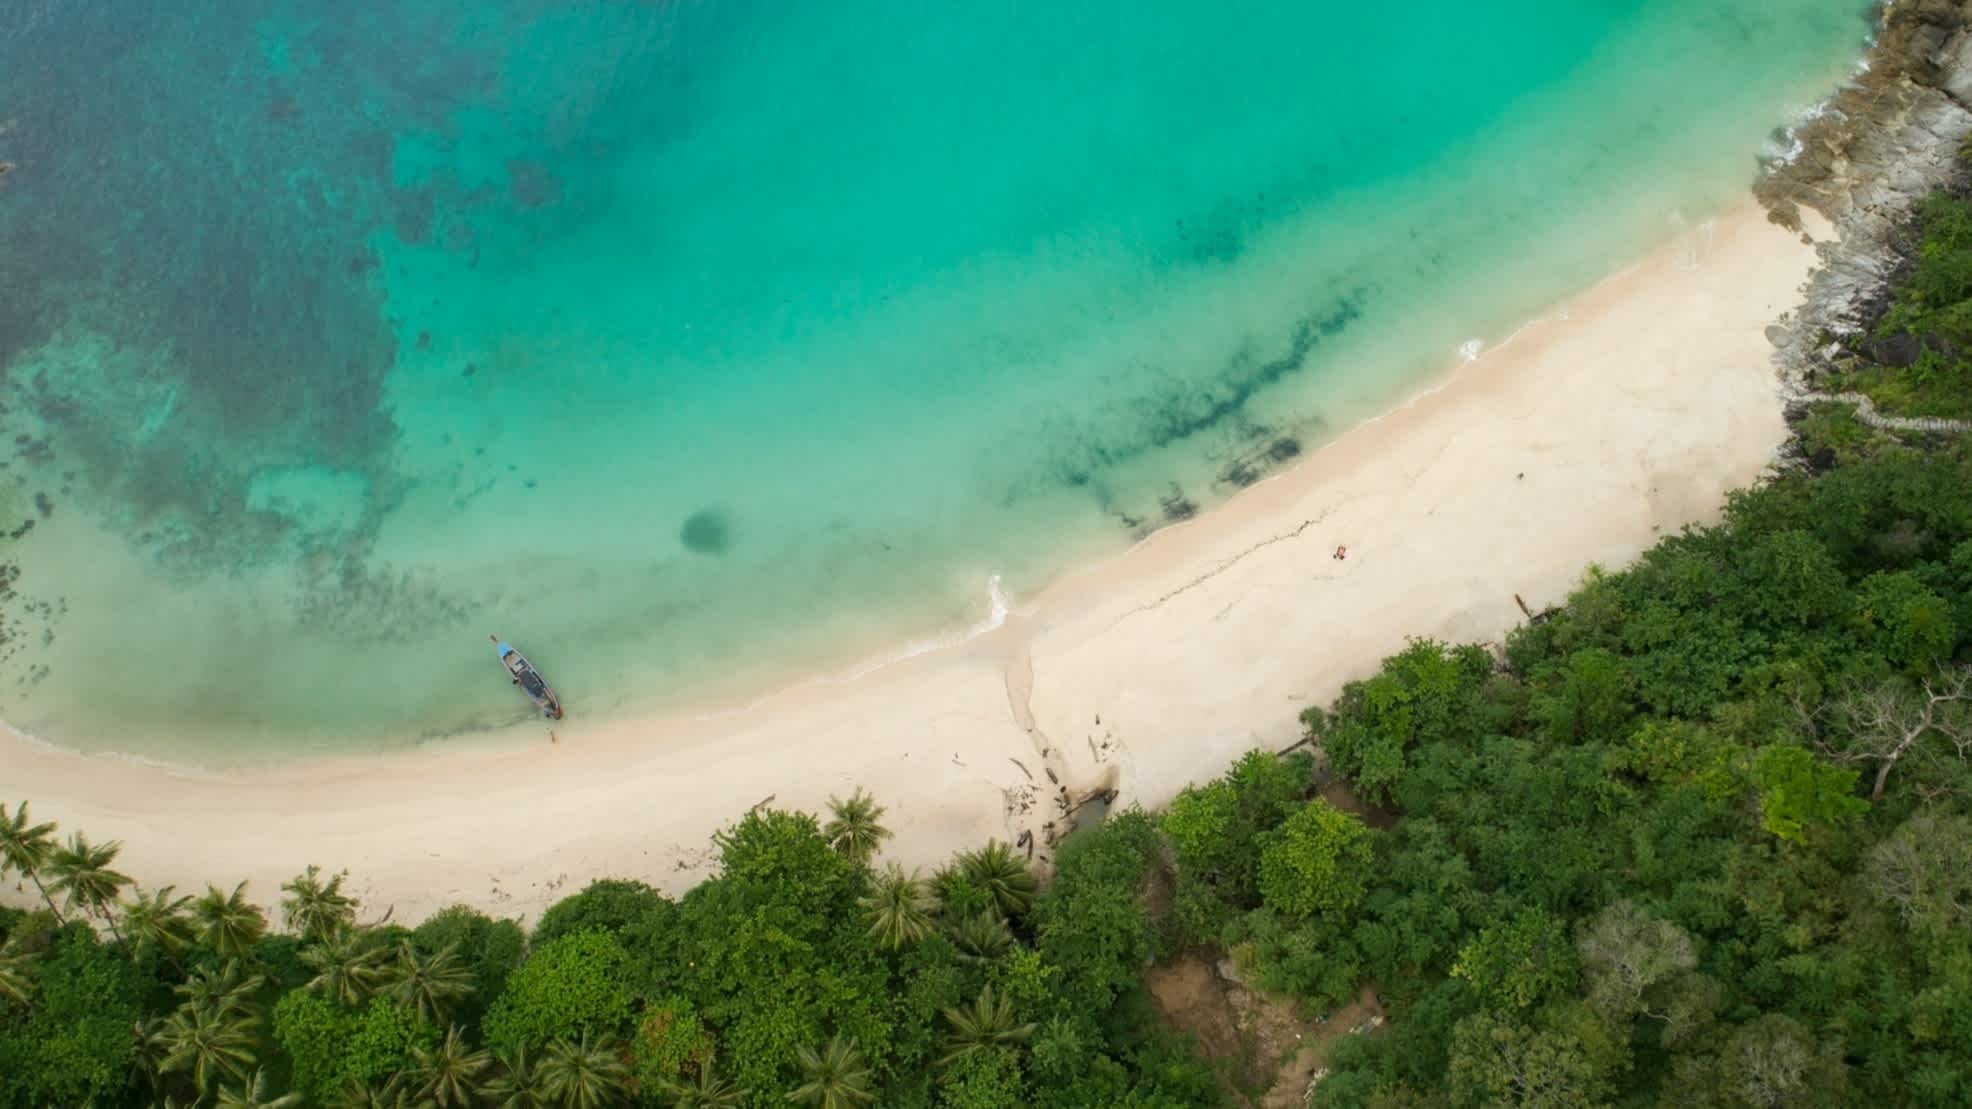 Luftaufnahme des paradiesischen Freedom Beach auf Phuket mit türkisblauem Meer, Sandstrand und üppigem Grün.